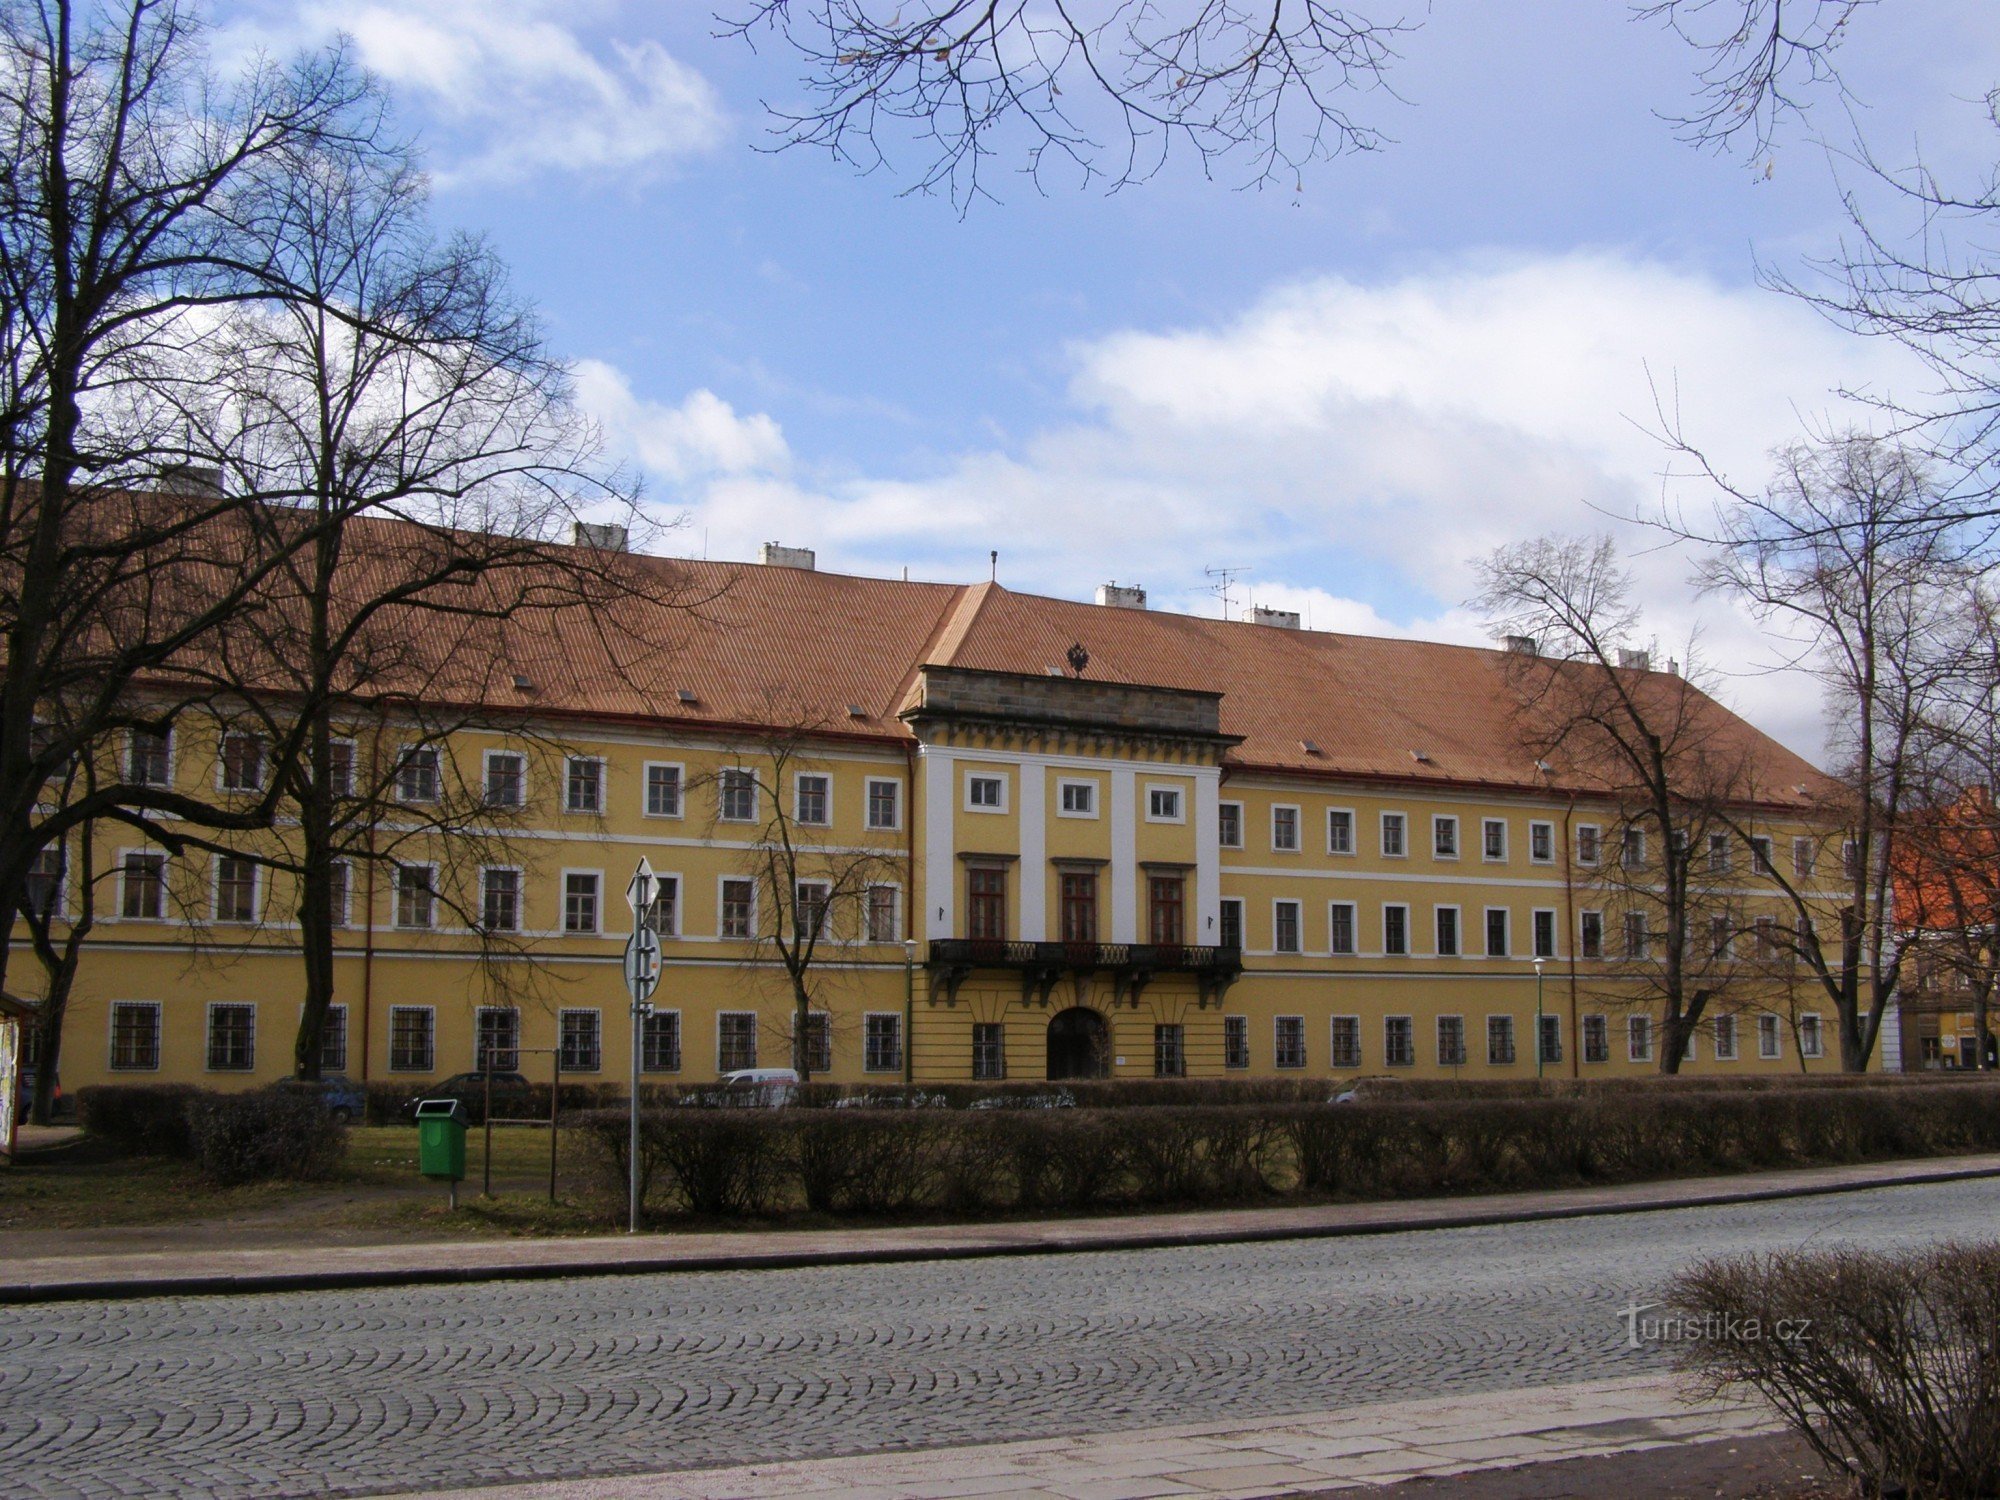 Josefov - former headquarters